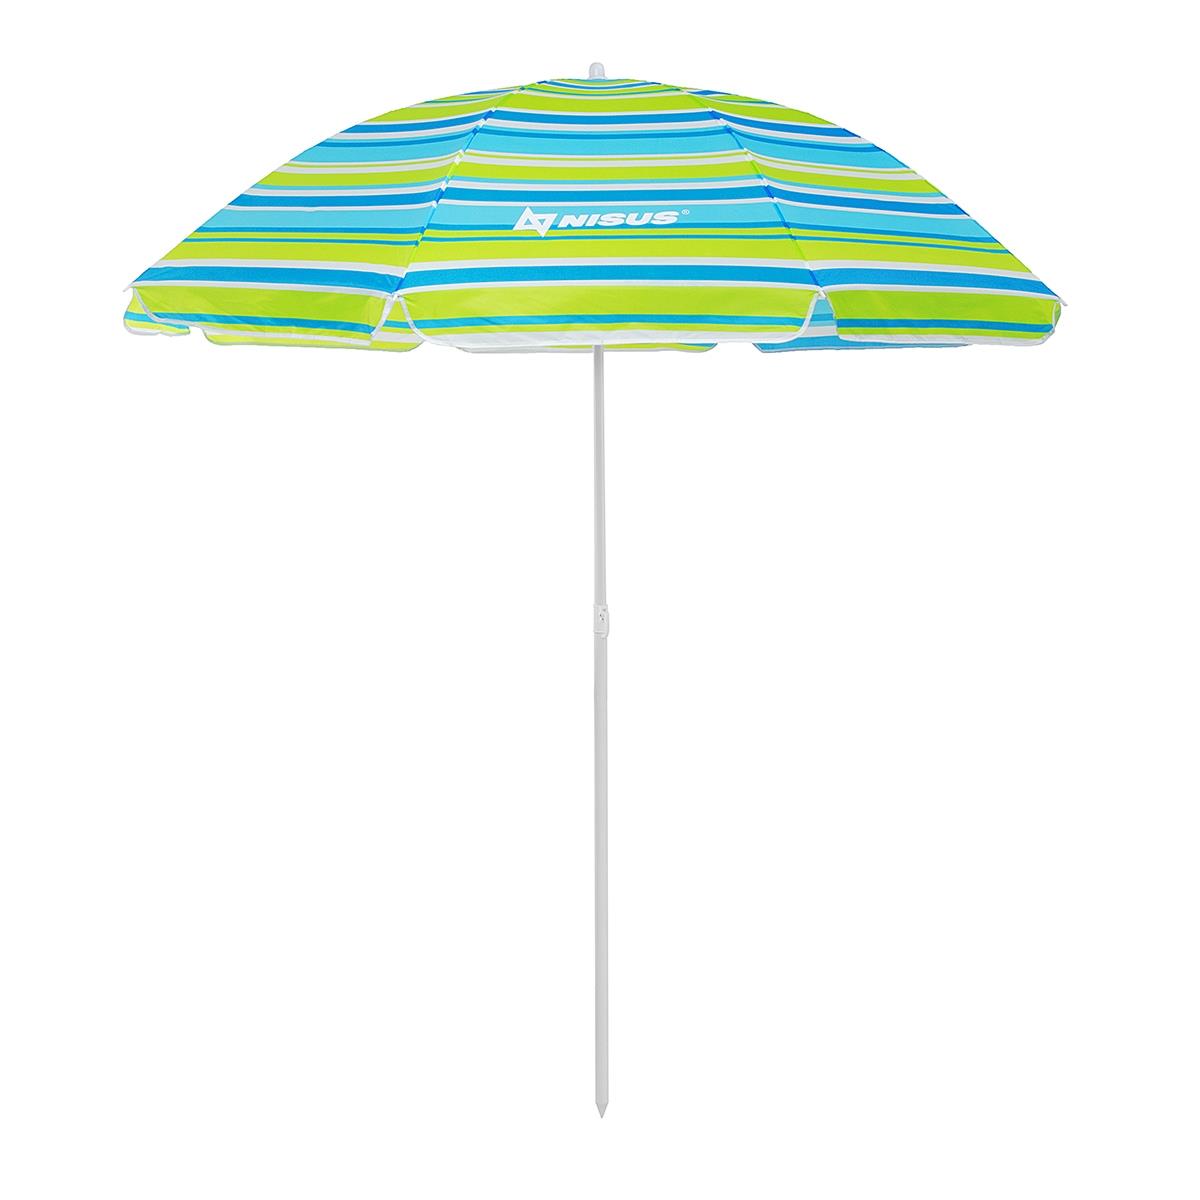 Зонт пляжный d 2,00м  с наклоном (22/25/170Т) NA-200N-SB Nisus зонт пляжный d 1 8м с наклоном арбуз 19 22 170т na bu1907 180 w nisus